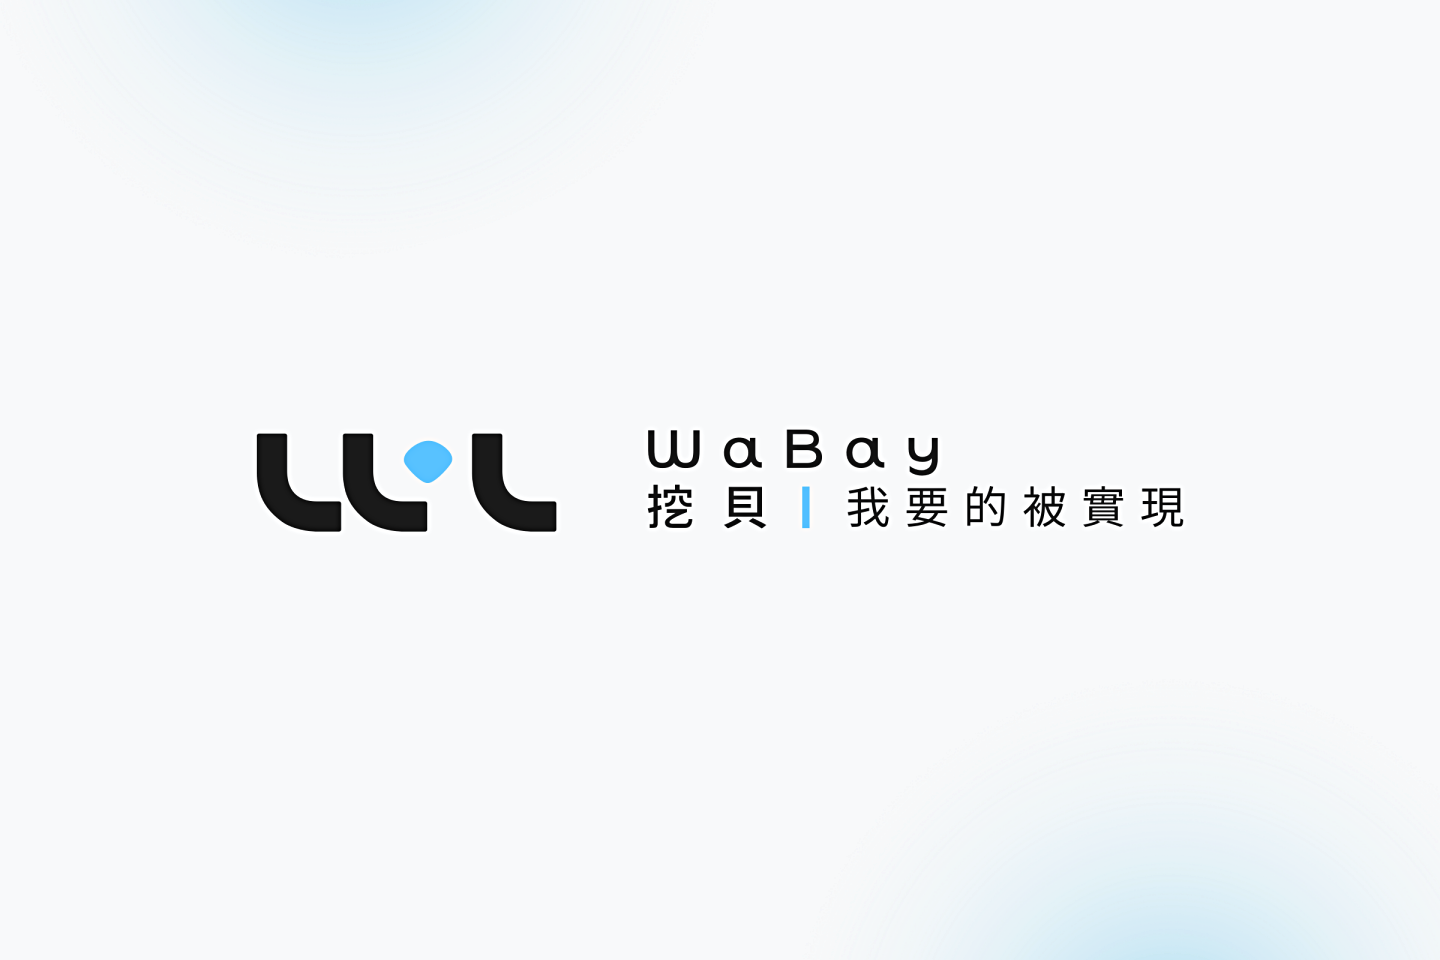 貝殼放大集資平台『 挖貝 WaBay 』正式上線！致力替提案團隊和贊助者帶來全面保障